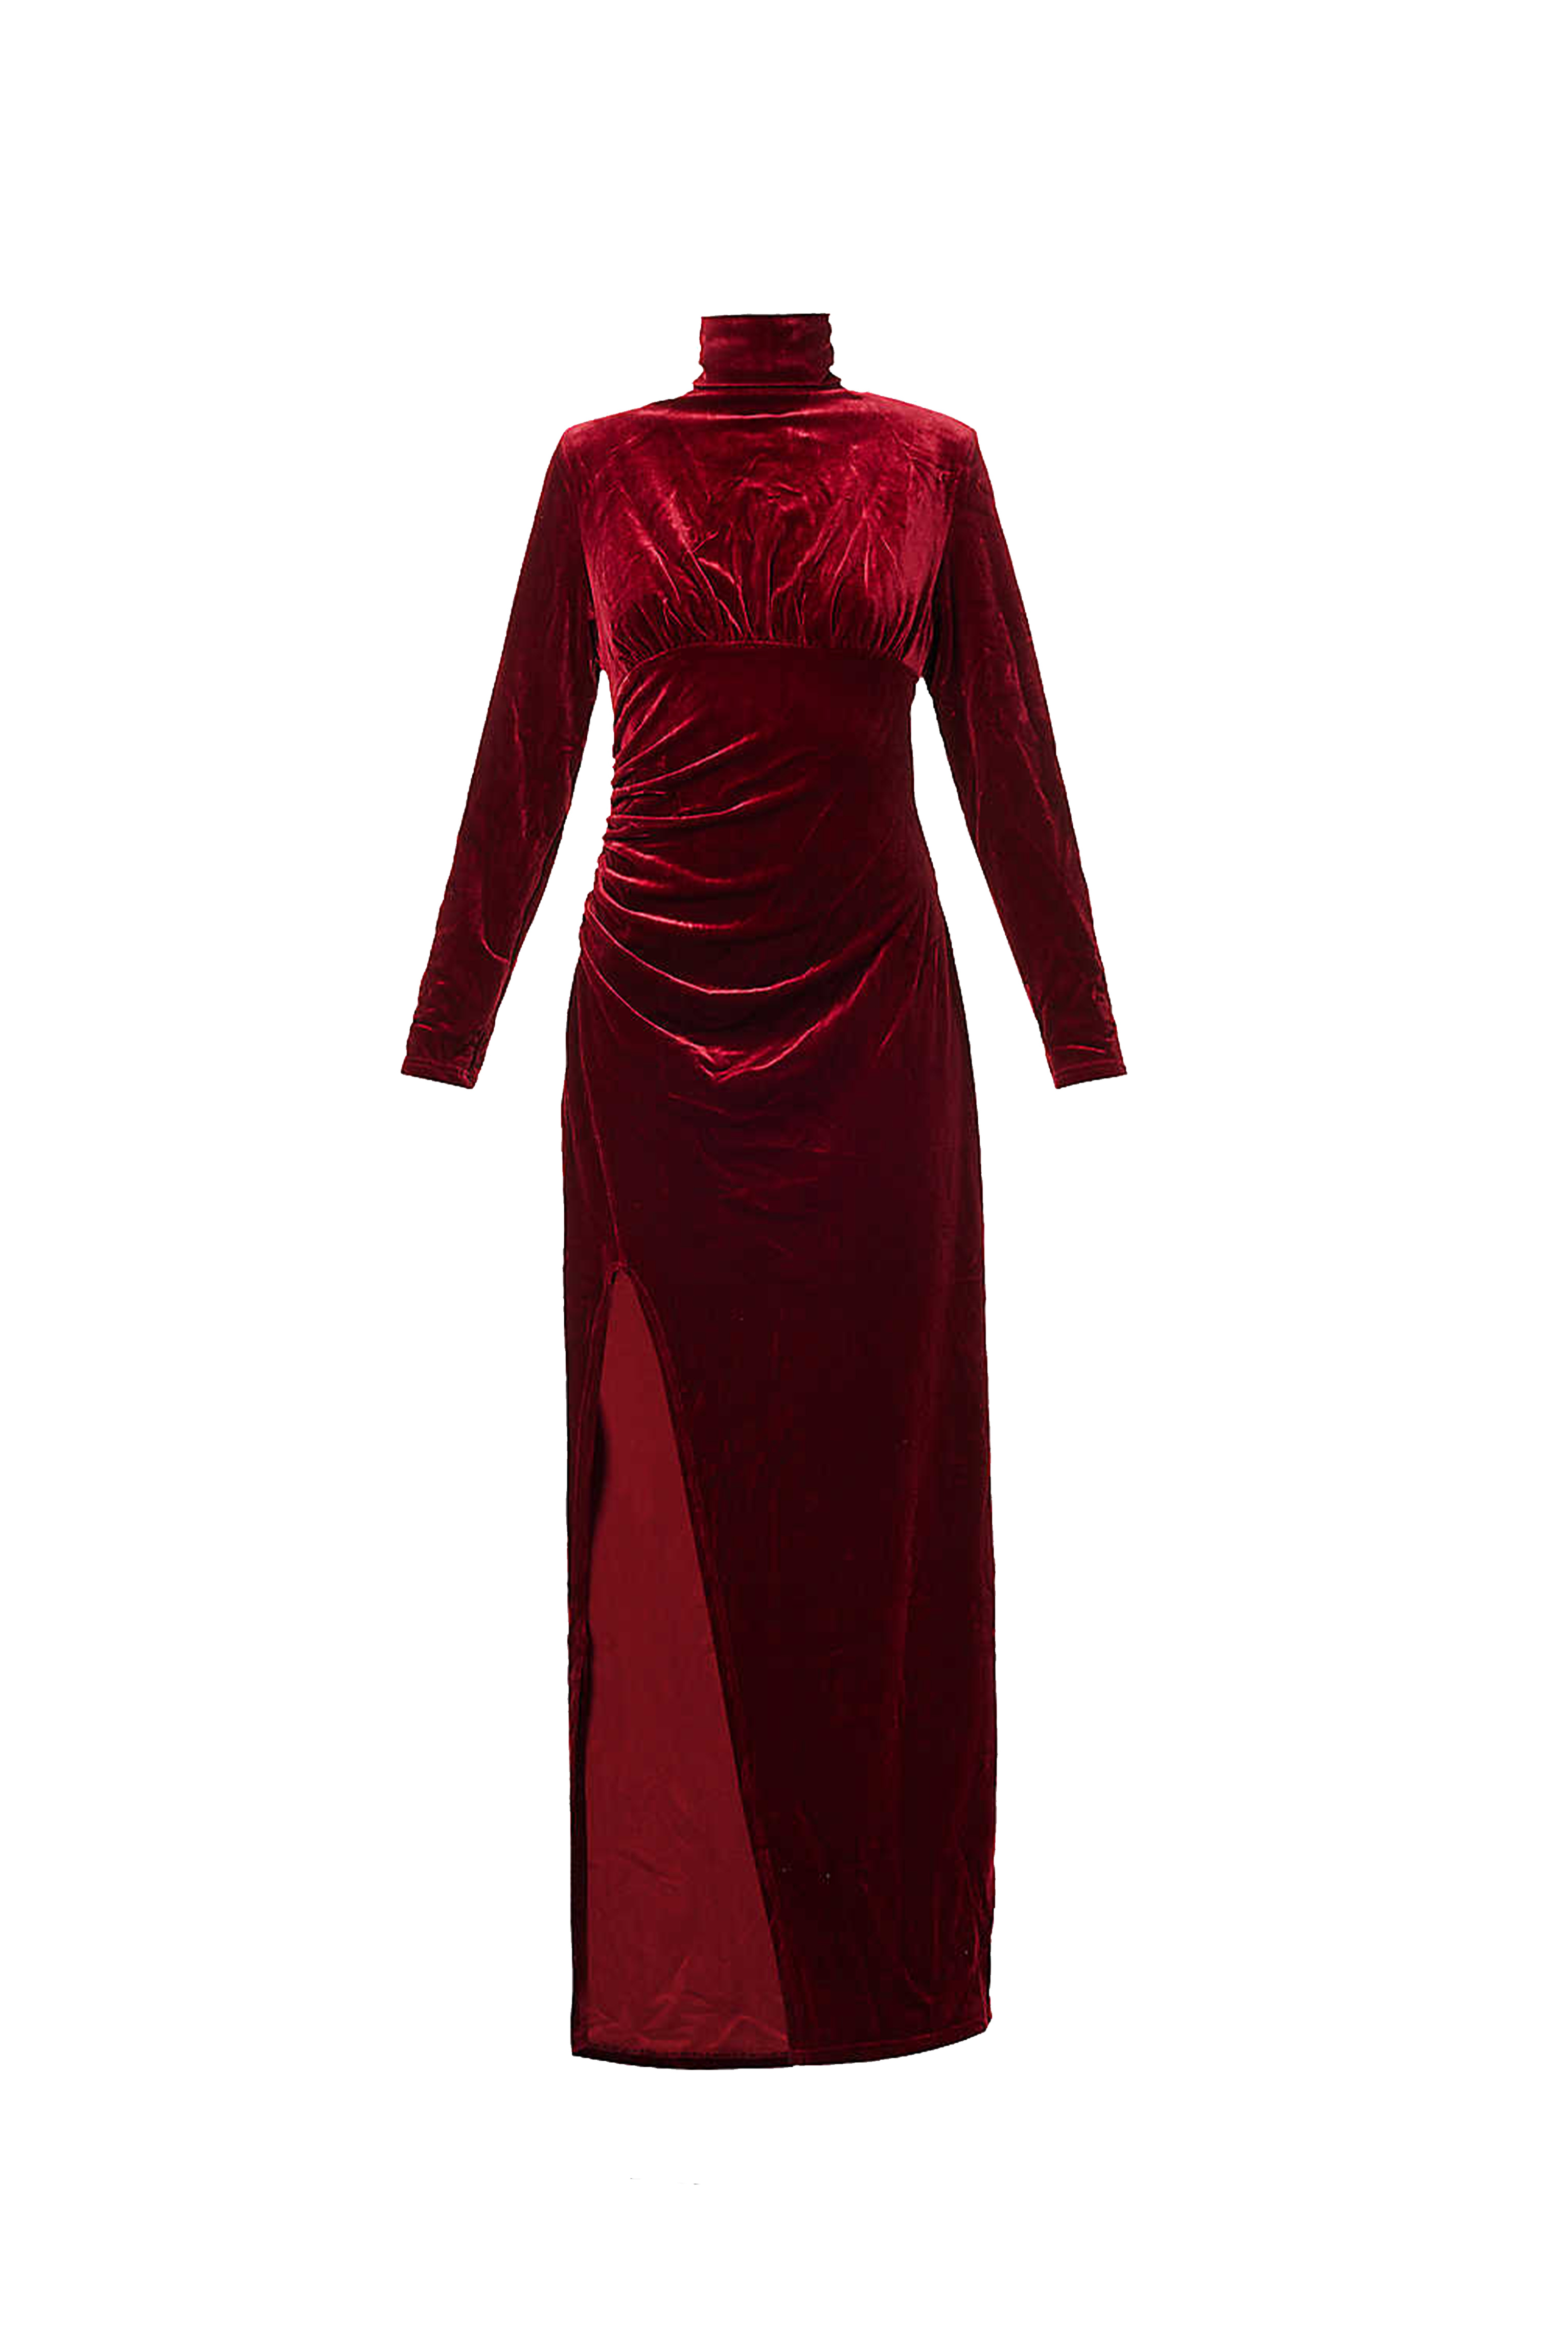 Amy Lynn Women's Red Sharron Burgundy Velvet Long Sleeve Dress